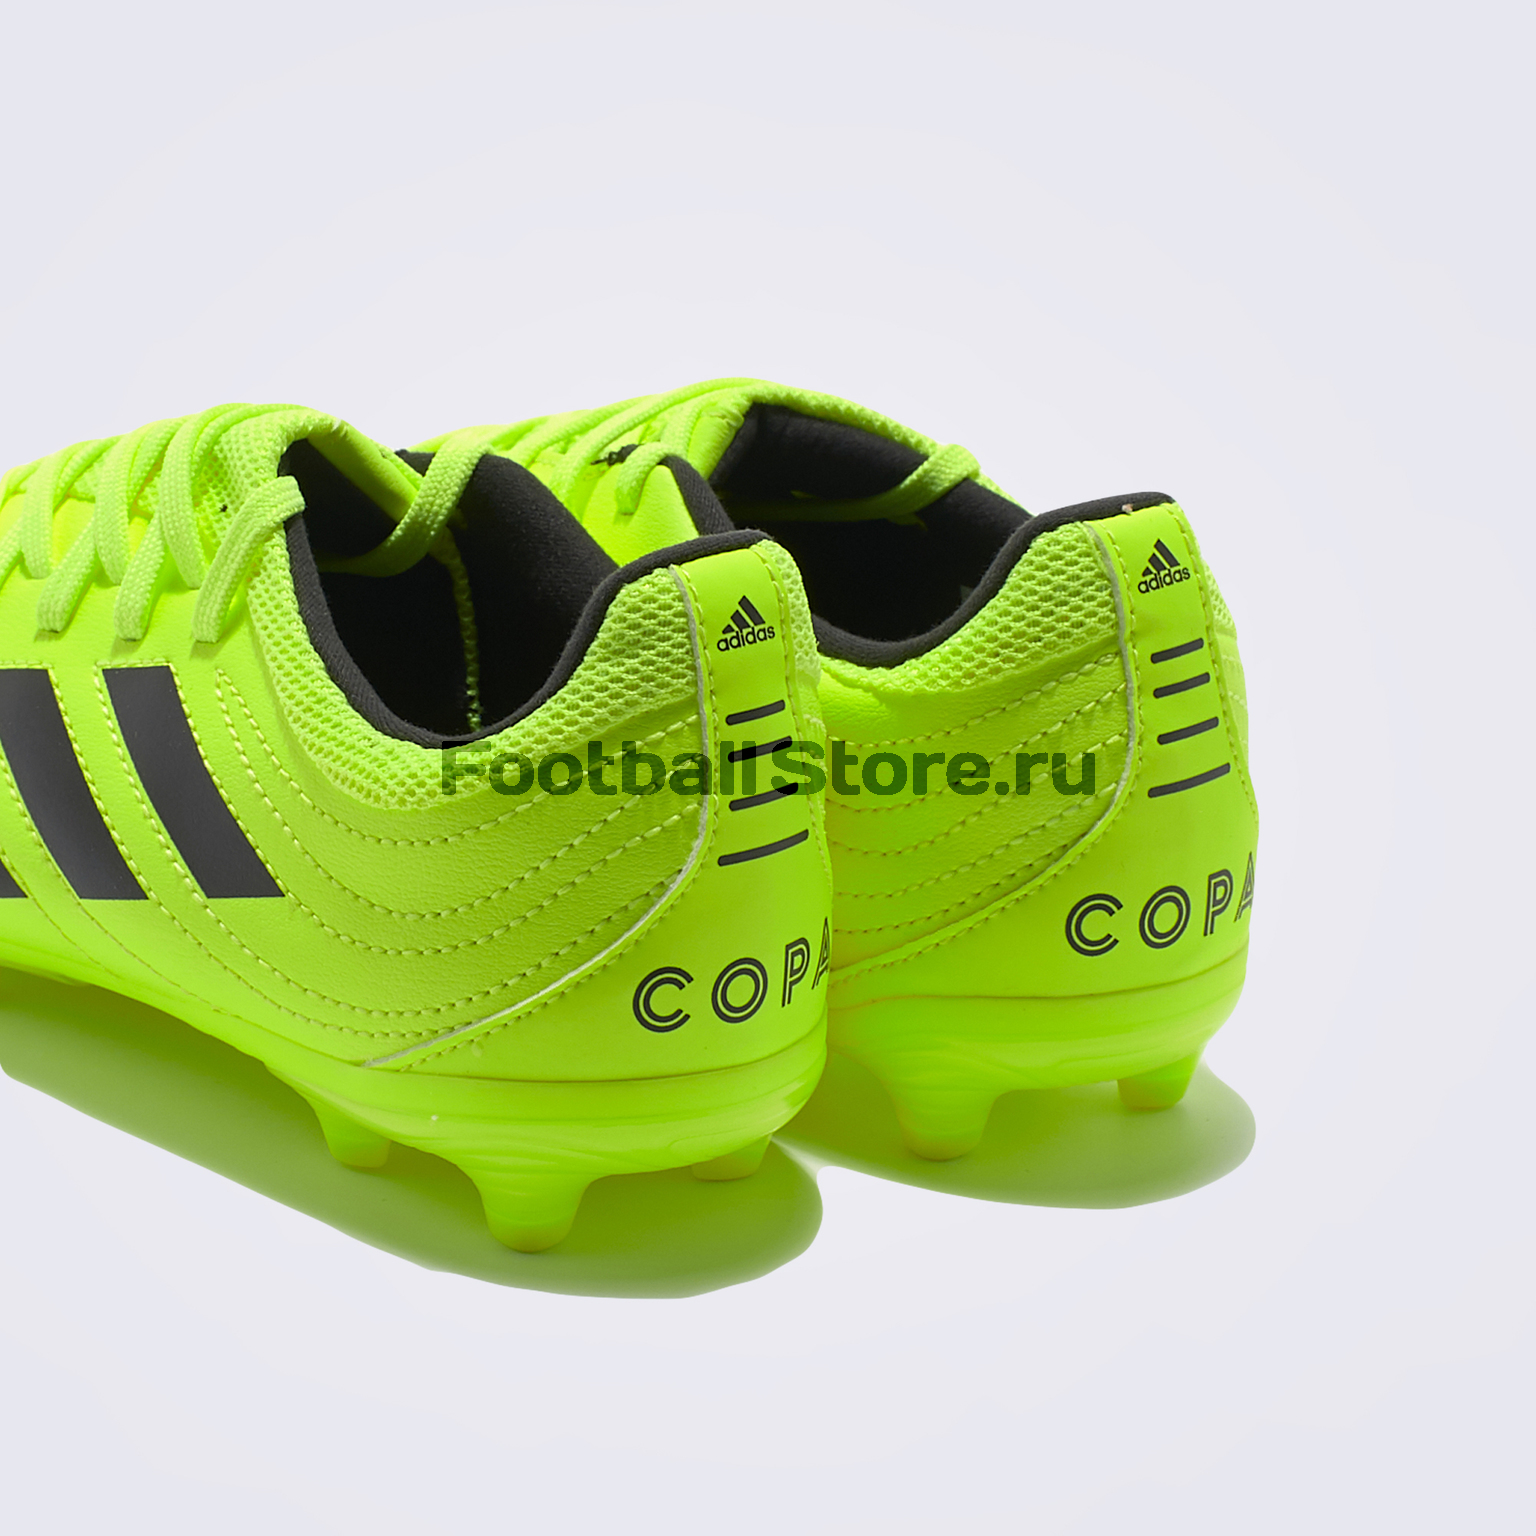 Бутсы детские Adidas Copa 19.3 FG F35466